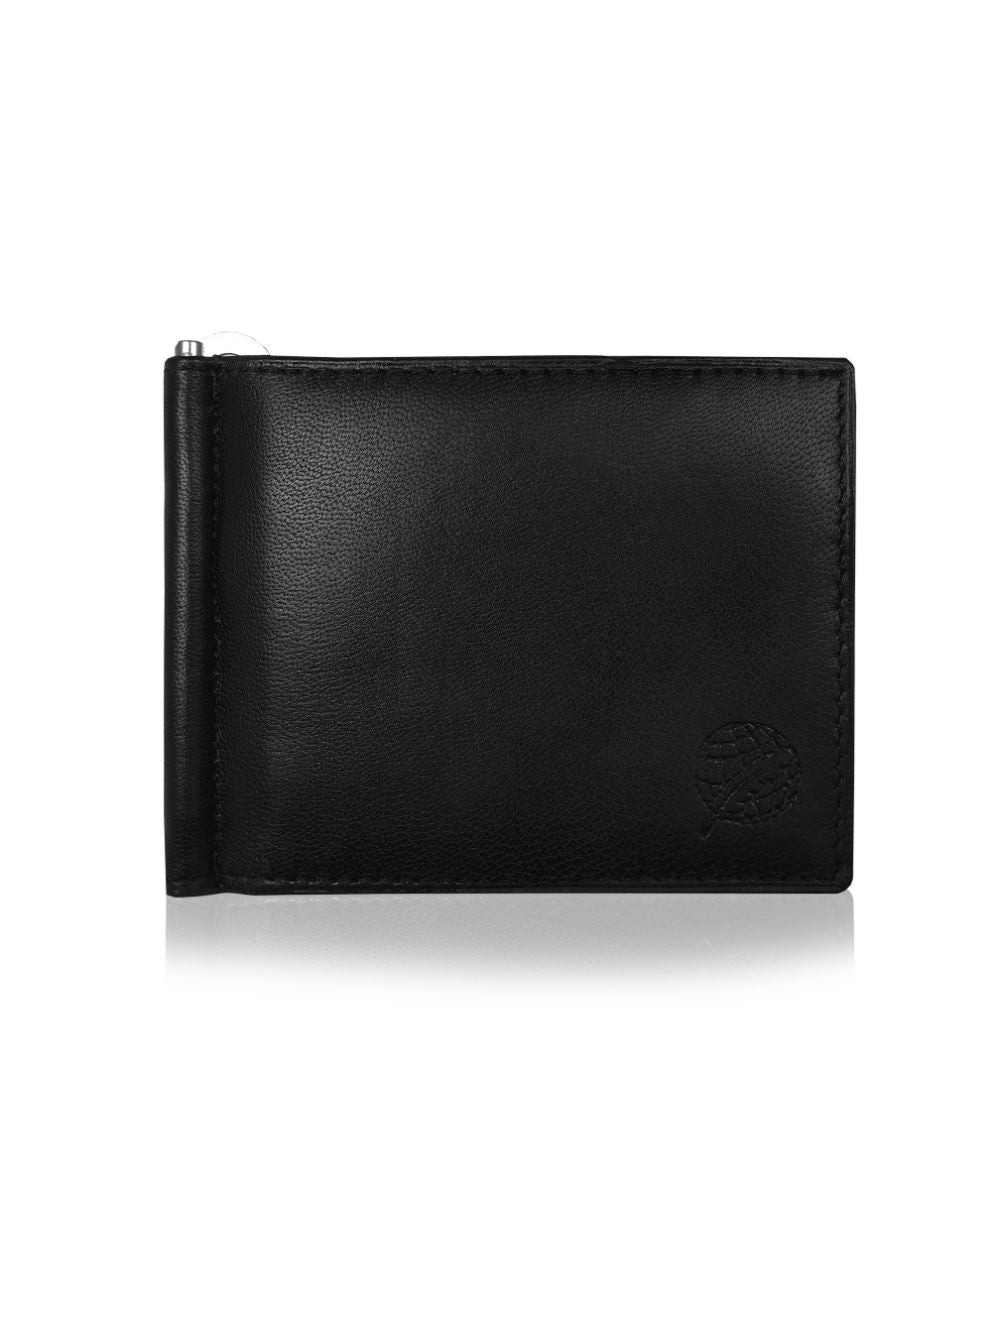 Roamlite Mens Wallet Black Leather RL192 front